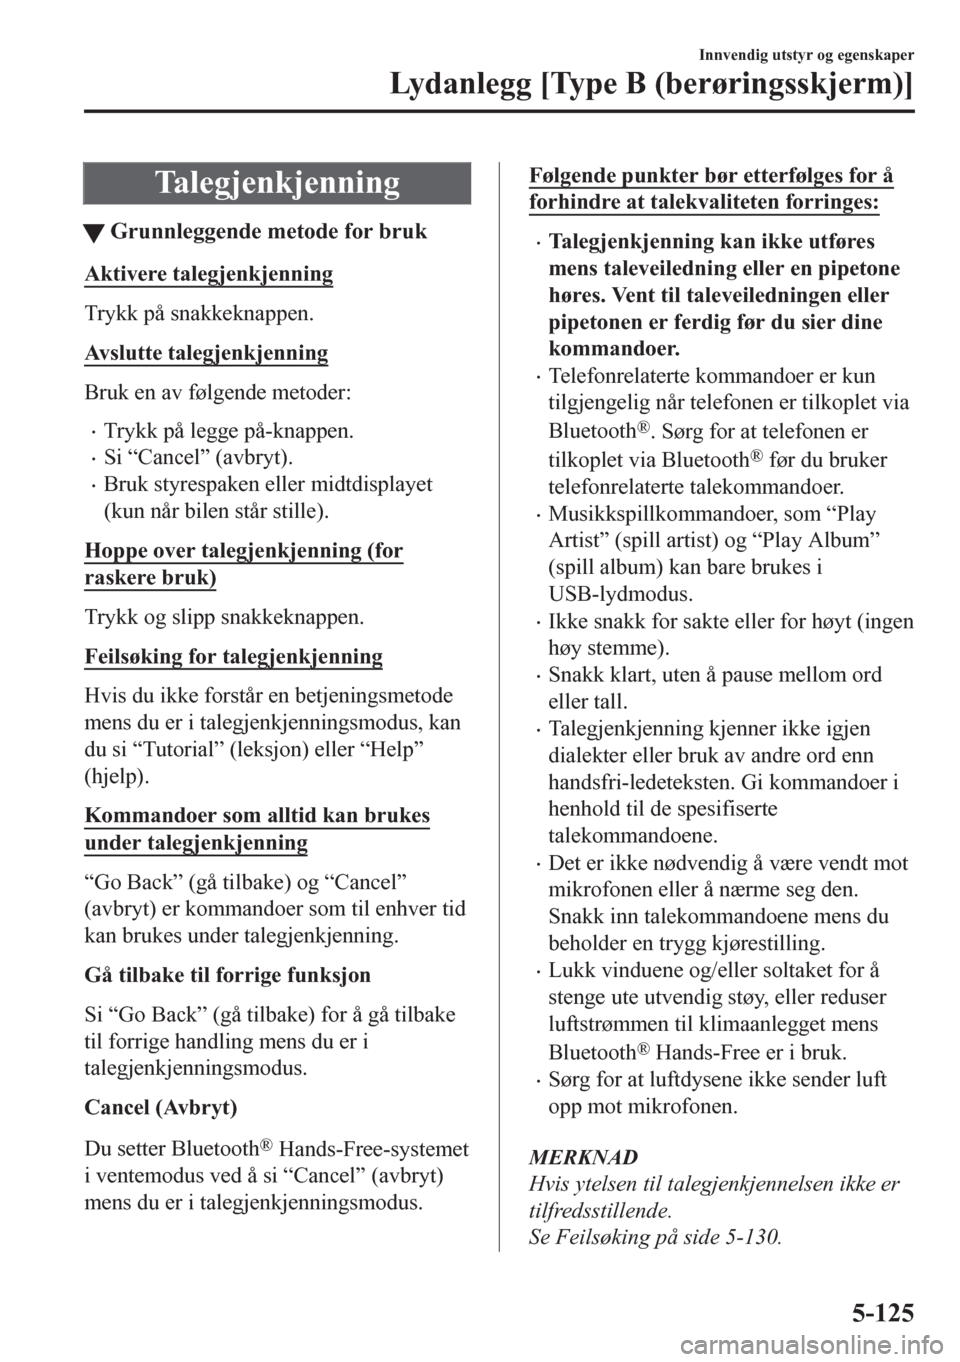 MAZDA MODEL CX-5 2018  Brukerhåndbok (in Norwegian) Talegjenkjenning
tGrunnleggende metode for bruk
Aktivere talegjenkjenning
Trykk på snakkeknappen.
Avslutte talegjenkjenning
Bruk en av følgende metoder:
•Trykk på legge på-knappen.
•Si “Canc